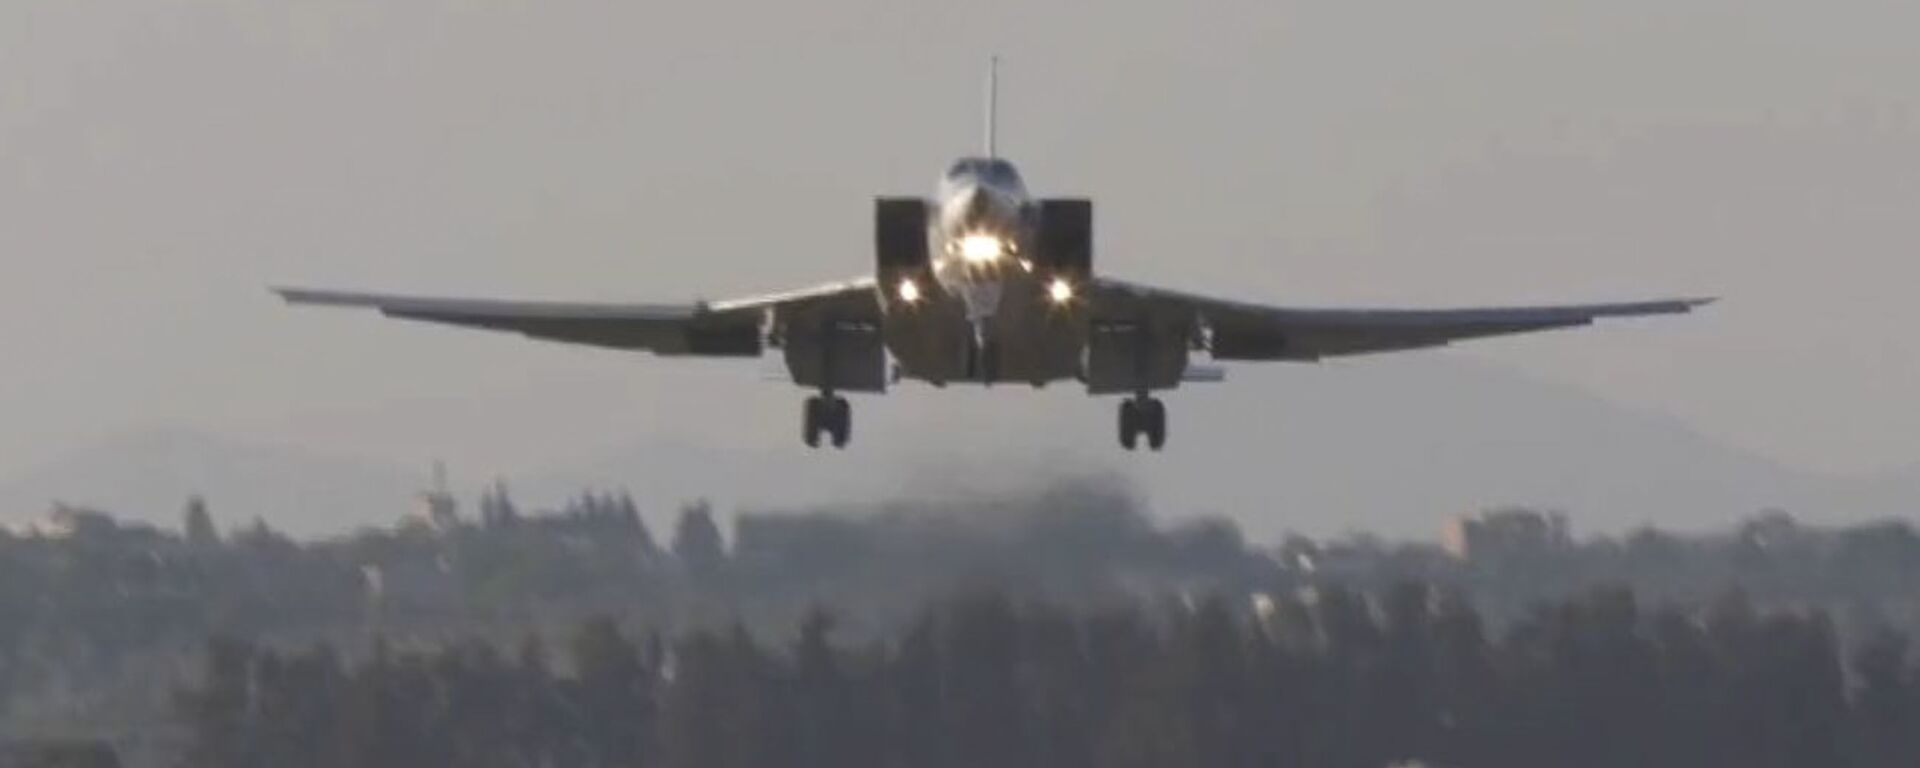 Дальние бомбардировщики Ту-22 впервые приземлились на авиабазе Хмеймим в Сирии - Sputnik Абхазия, 1920, 27.05.2021